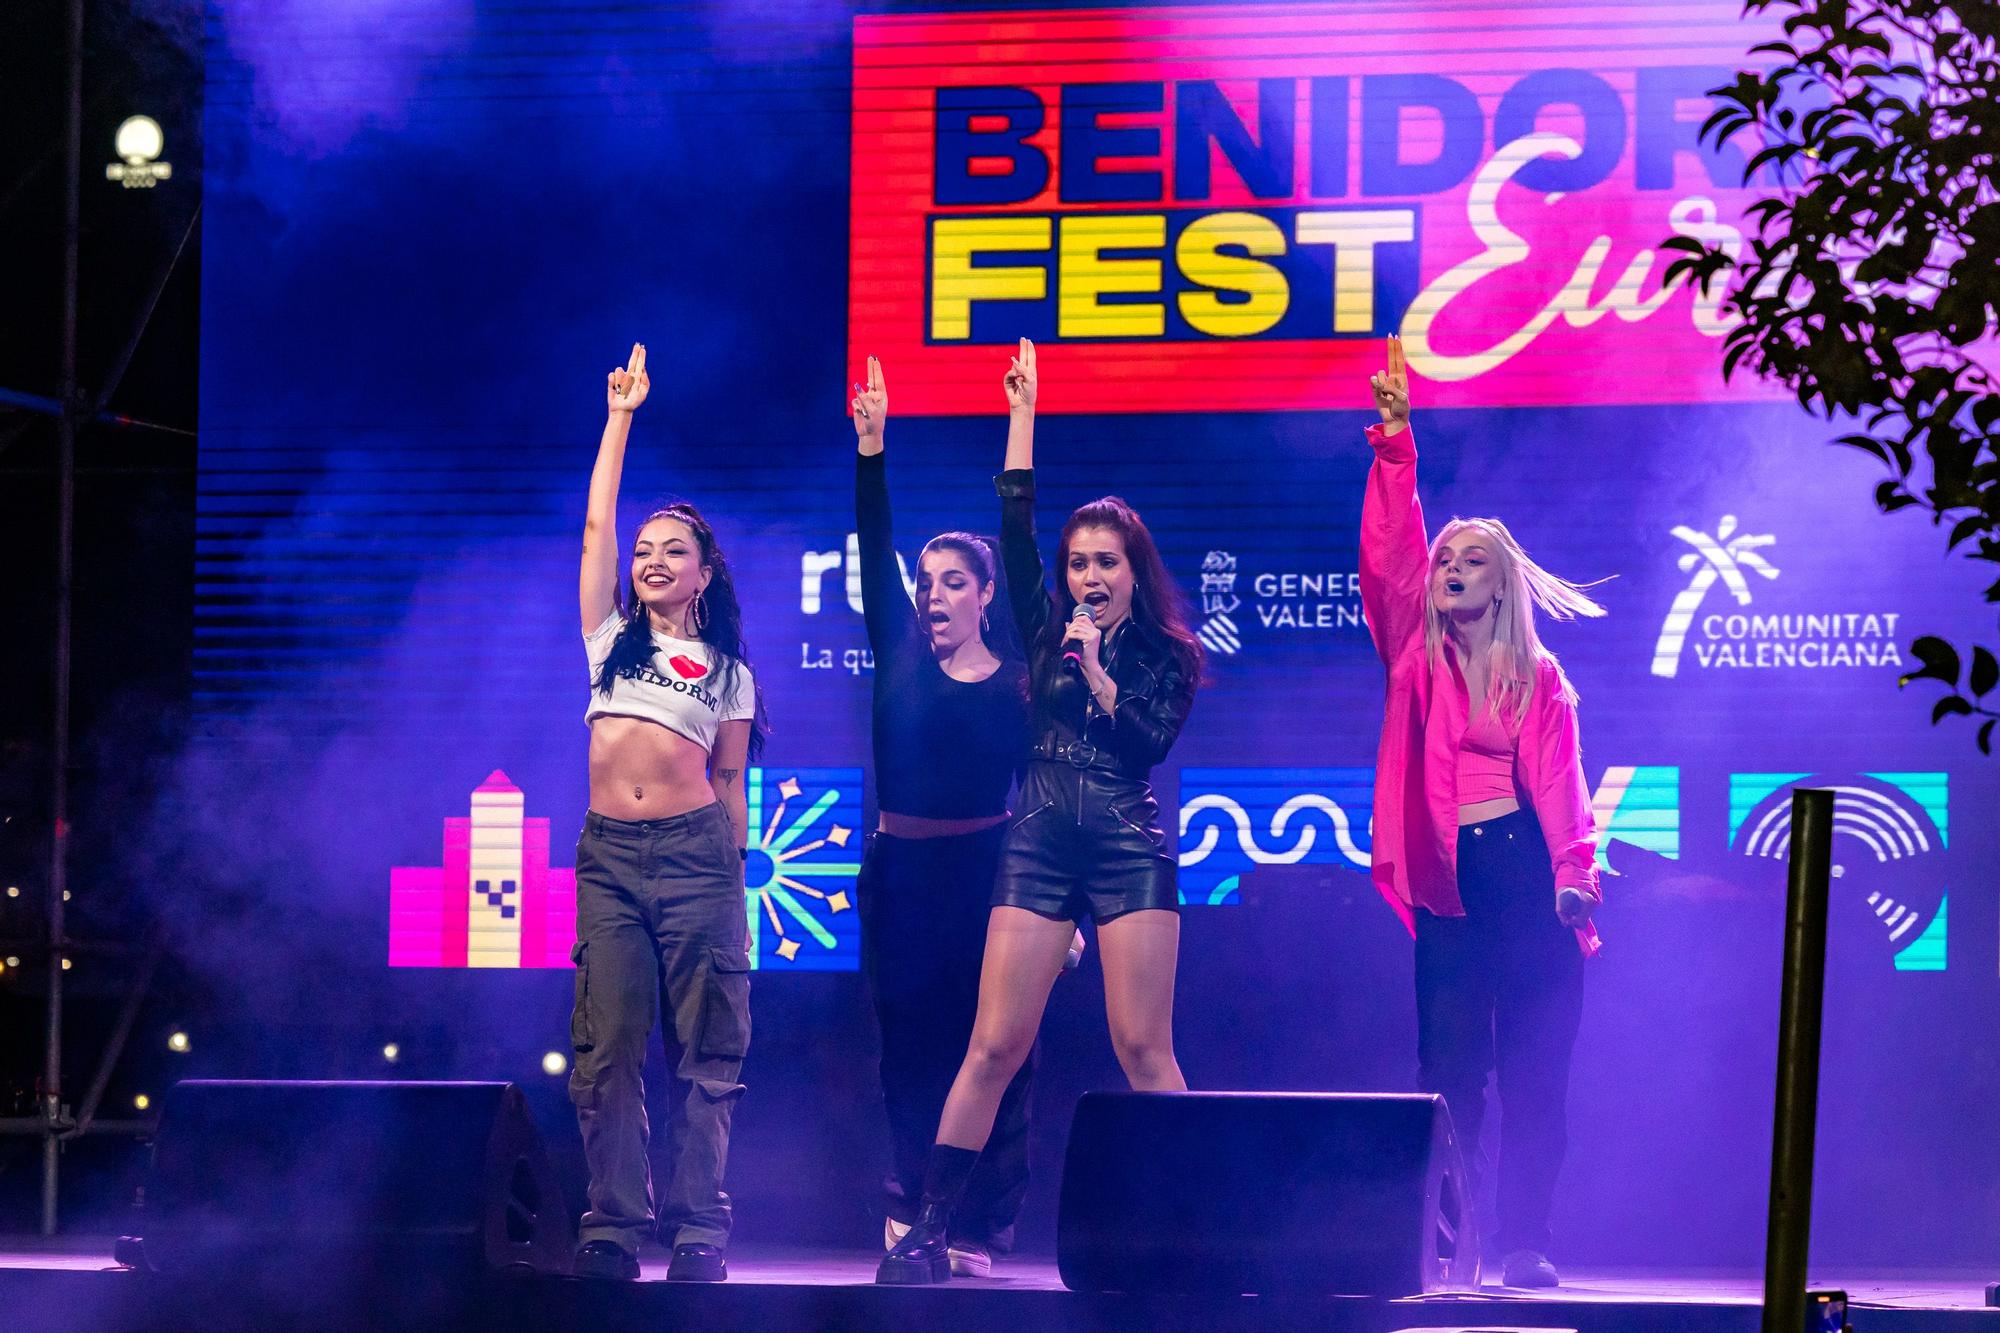 Las imágenes de la fiesta Euroclub del Benidorm Fest en el Tecnohito